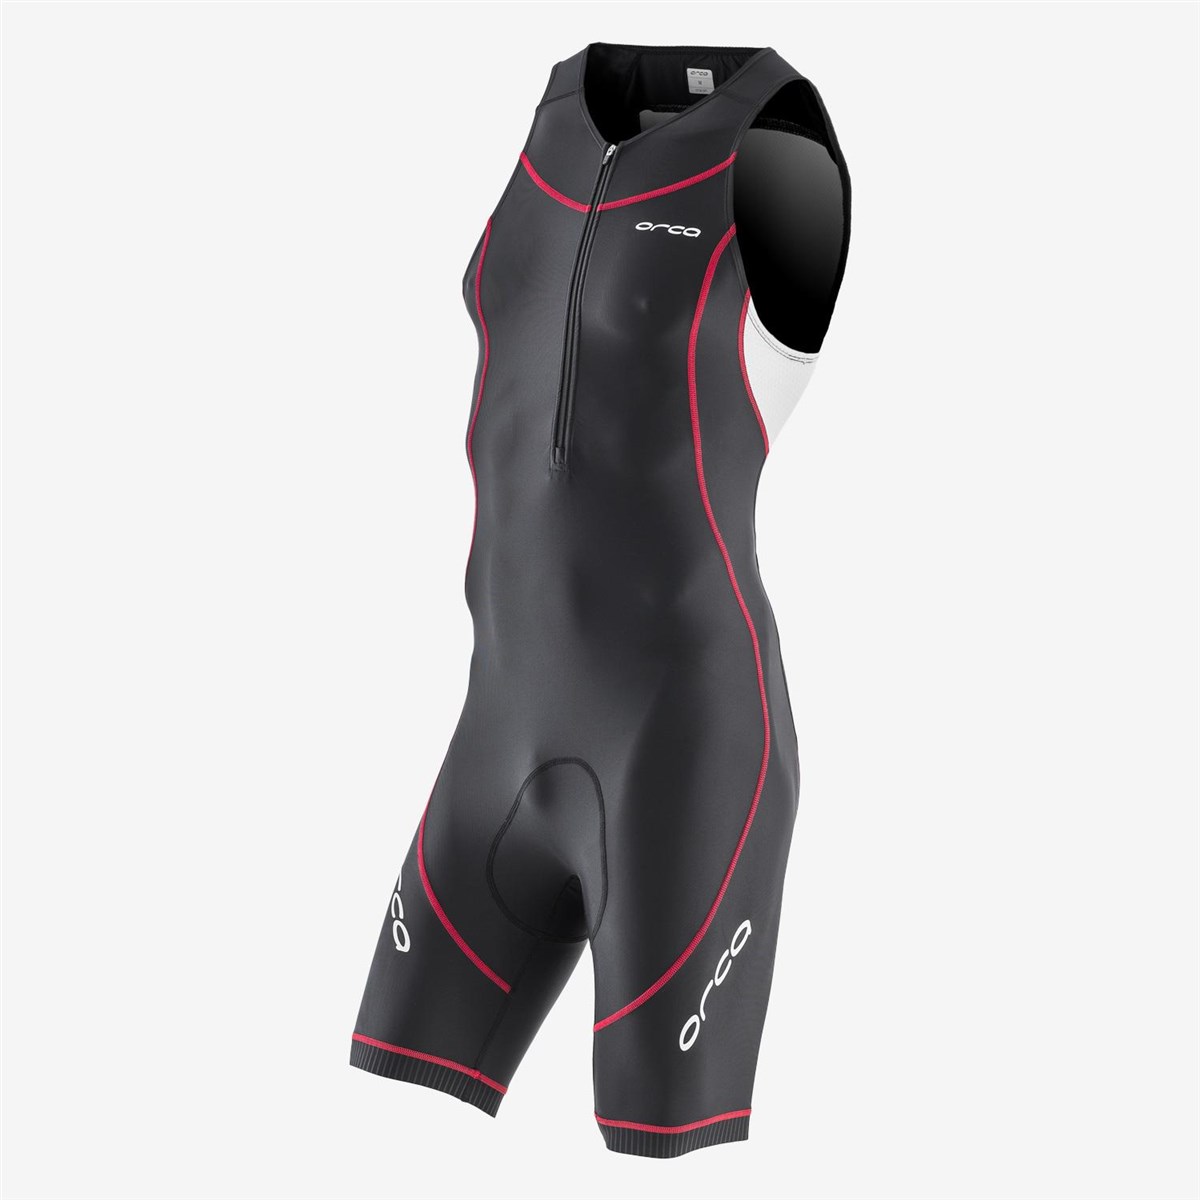 Orca Core Equip Racesuit product image